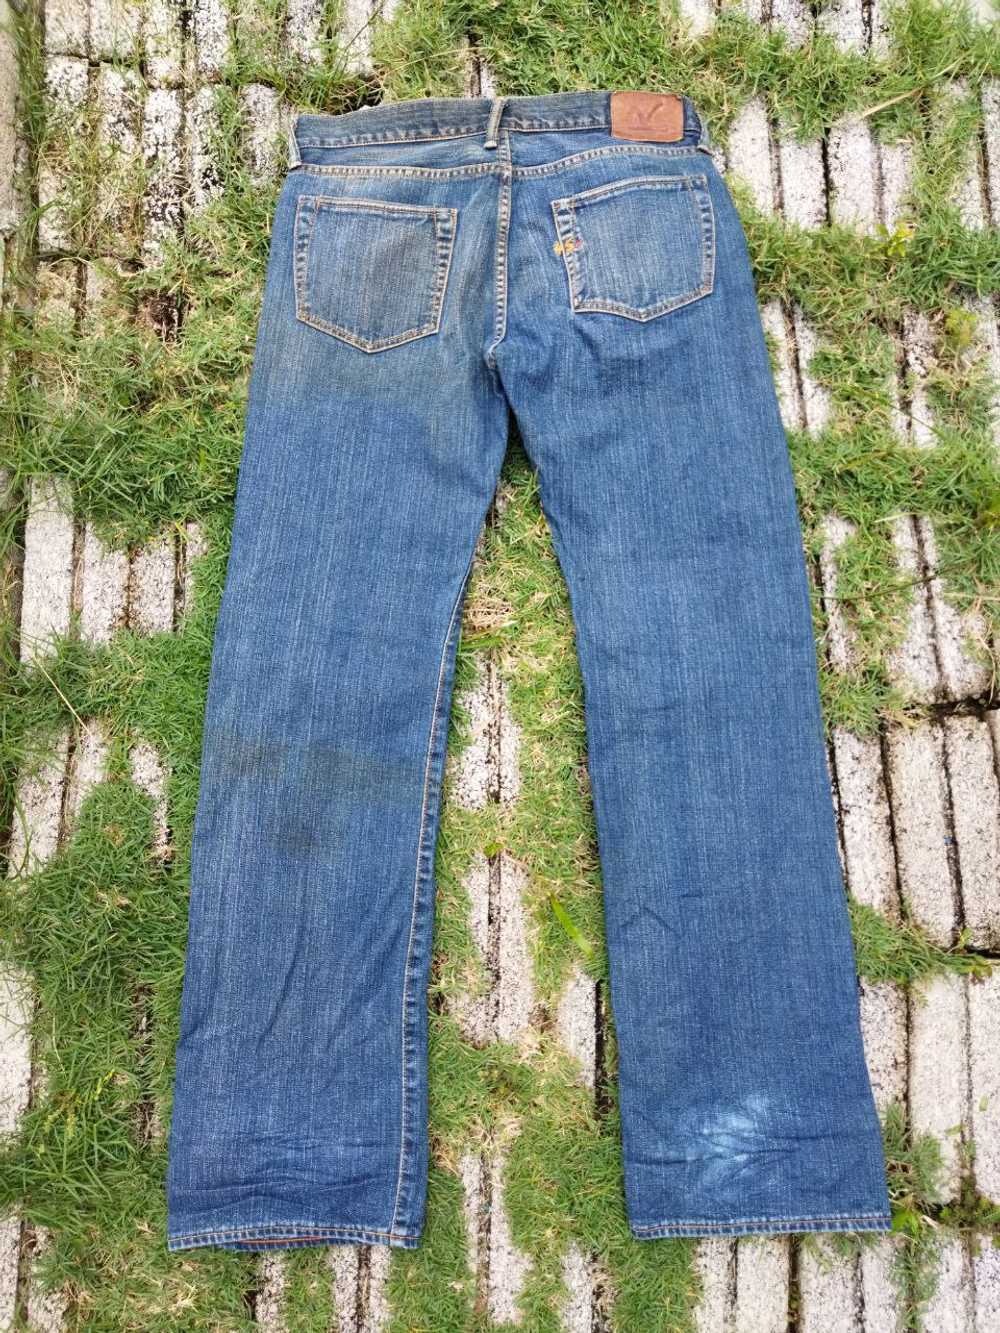 45rpm - Vintage 45rpm Japan Jeans - image 7